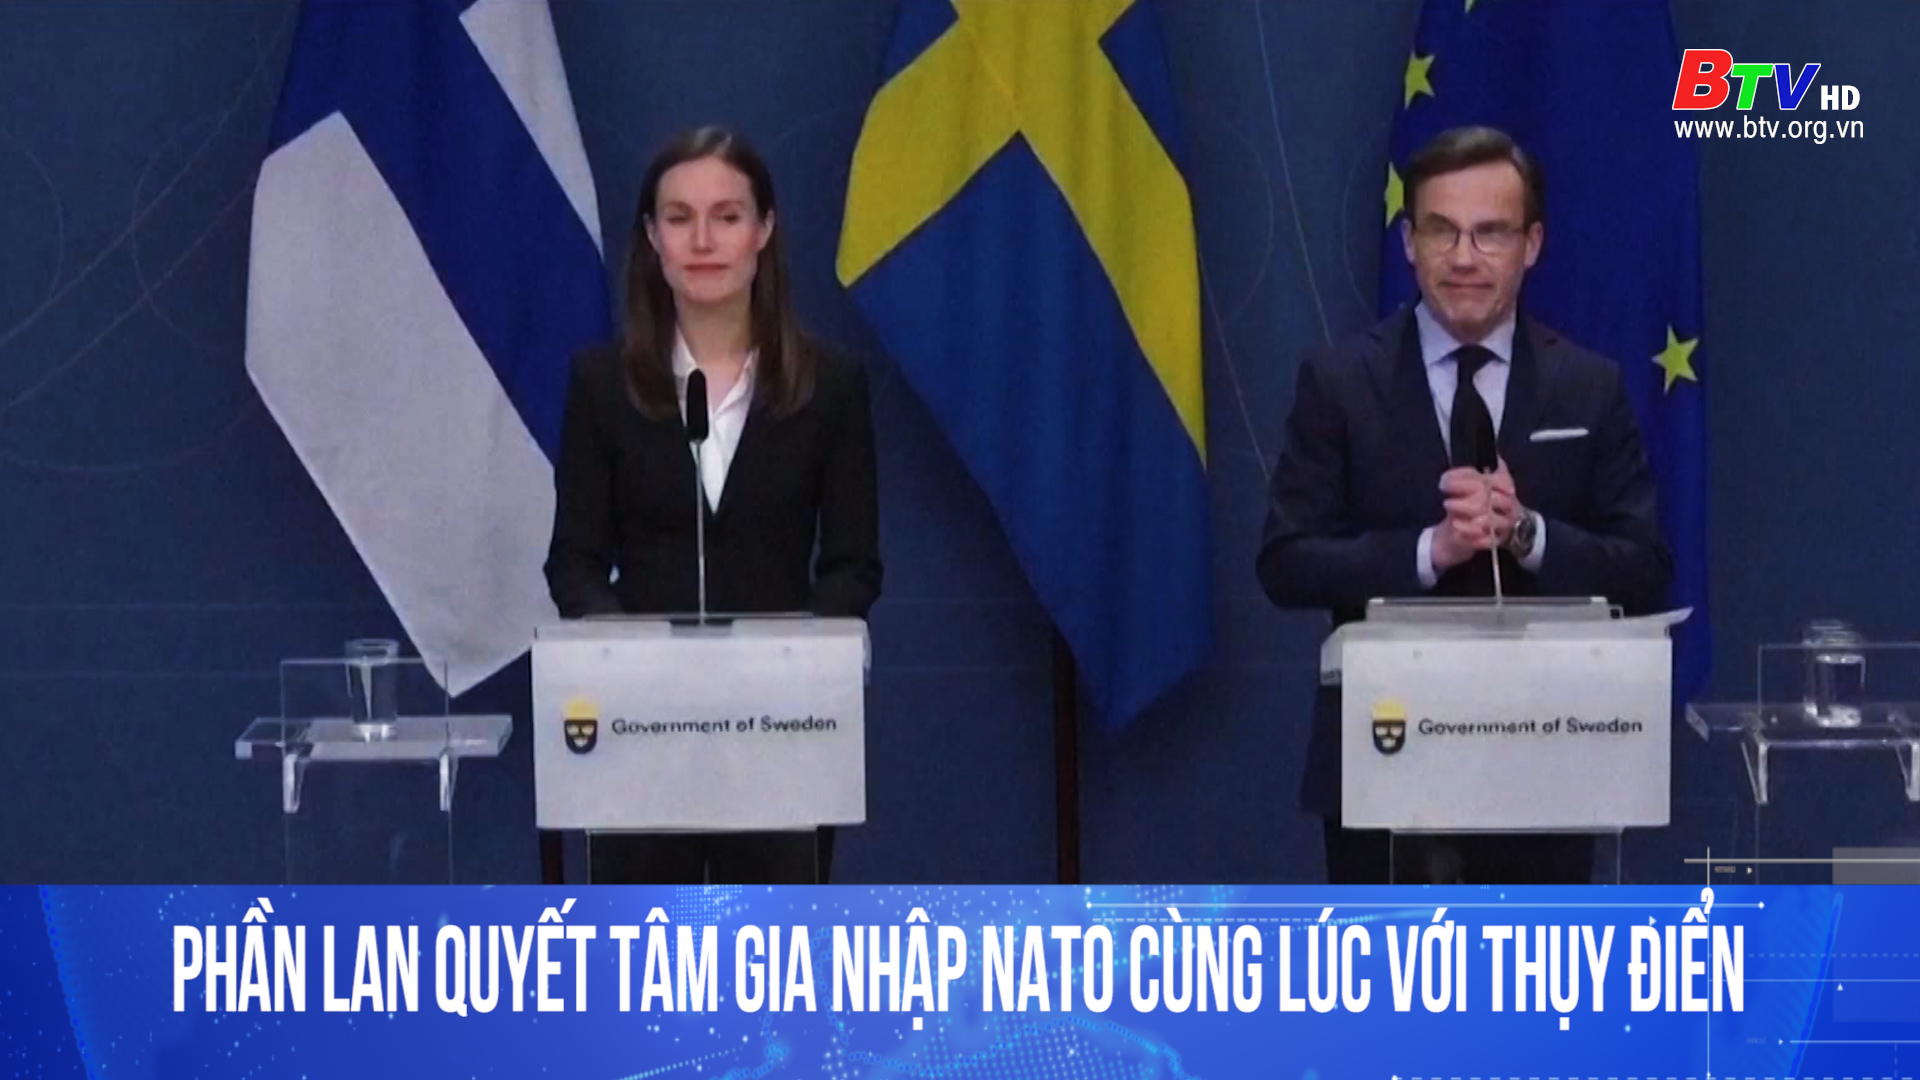 Phần lan quyết tâm gia nhập Nato cùng lúc với Thụy Điển